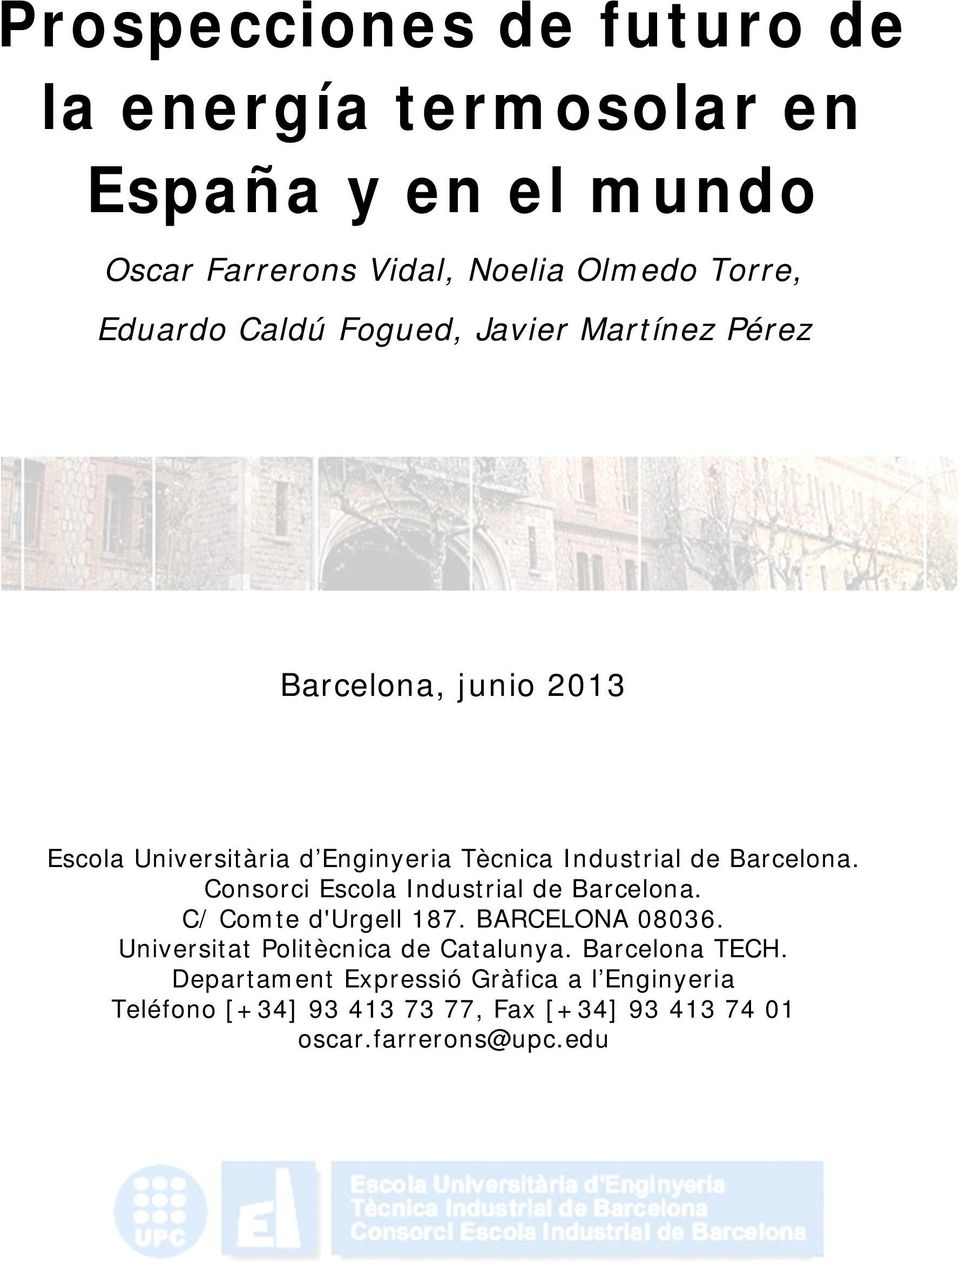 Consorci Escola Industrial de Barcelona. C/ Comte d'urgell 187. BARCELONA 08036. Universitat Politècnica de Catalunya.